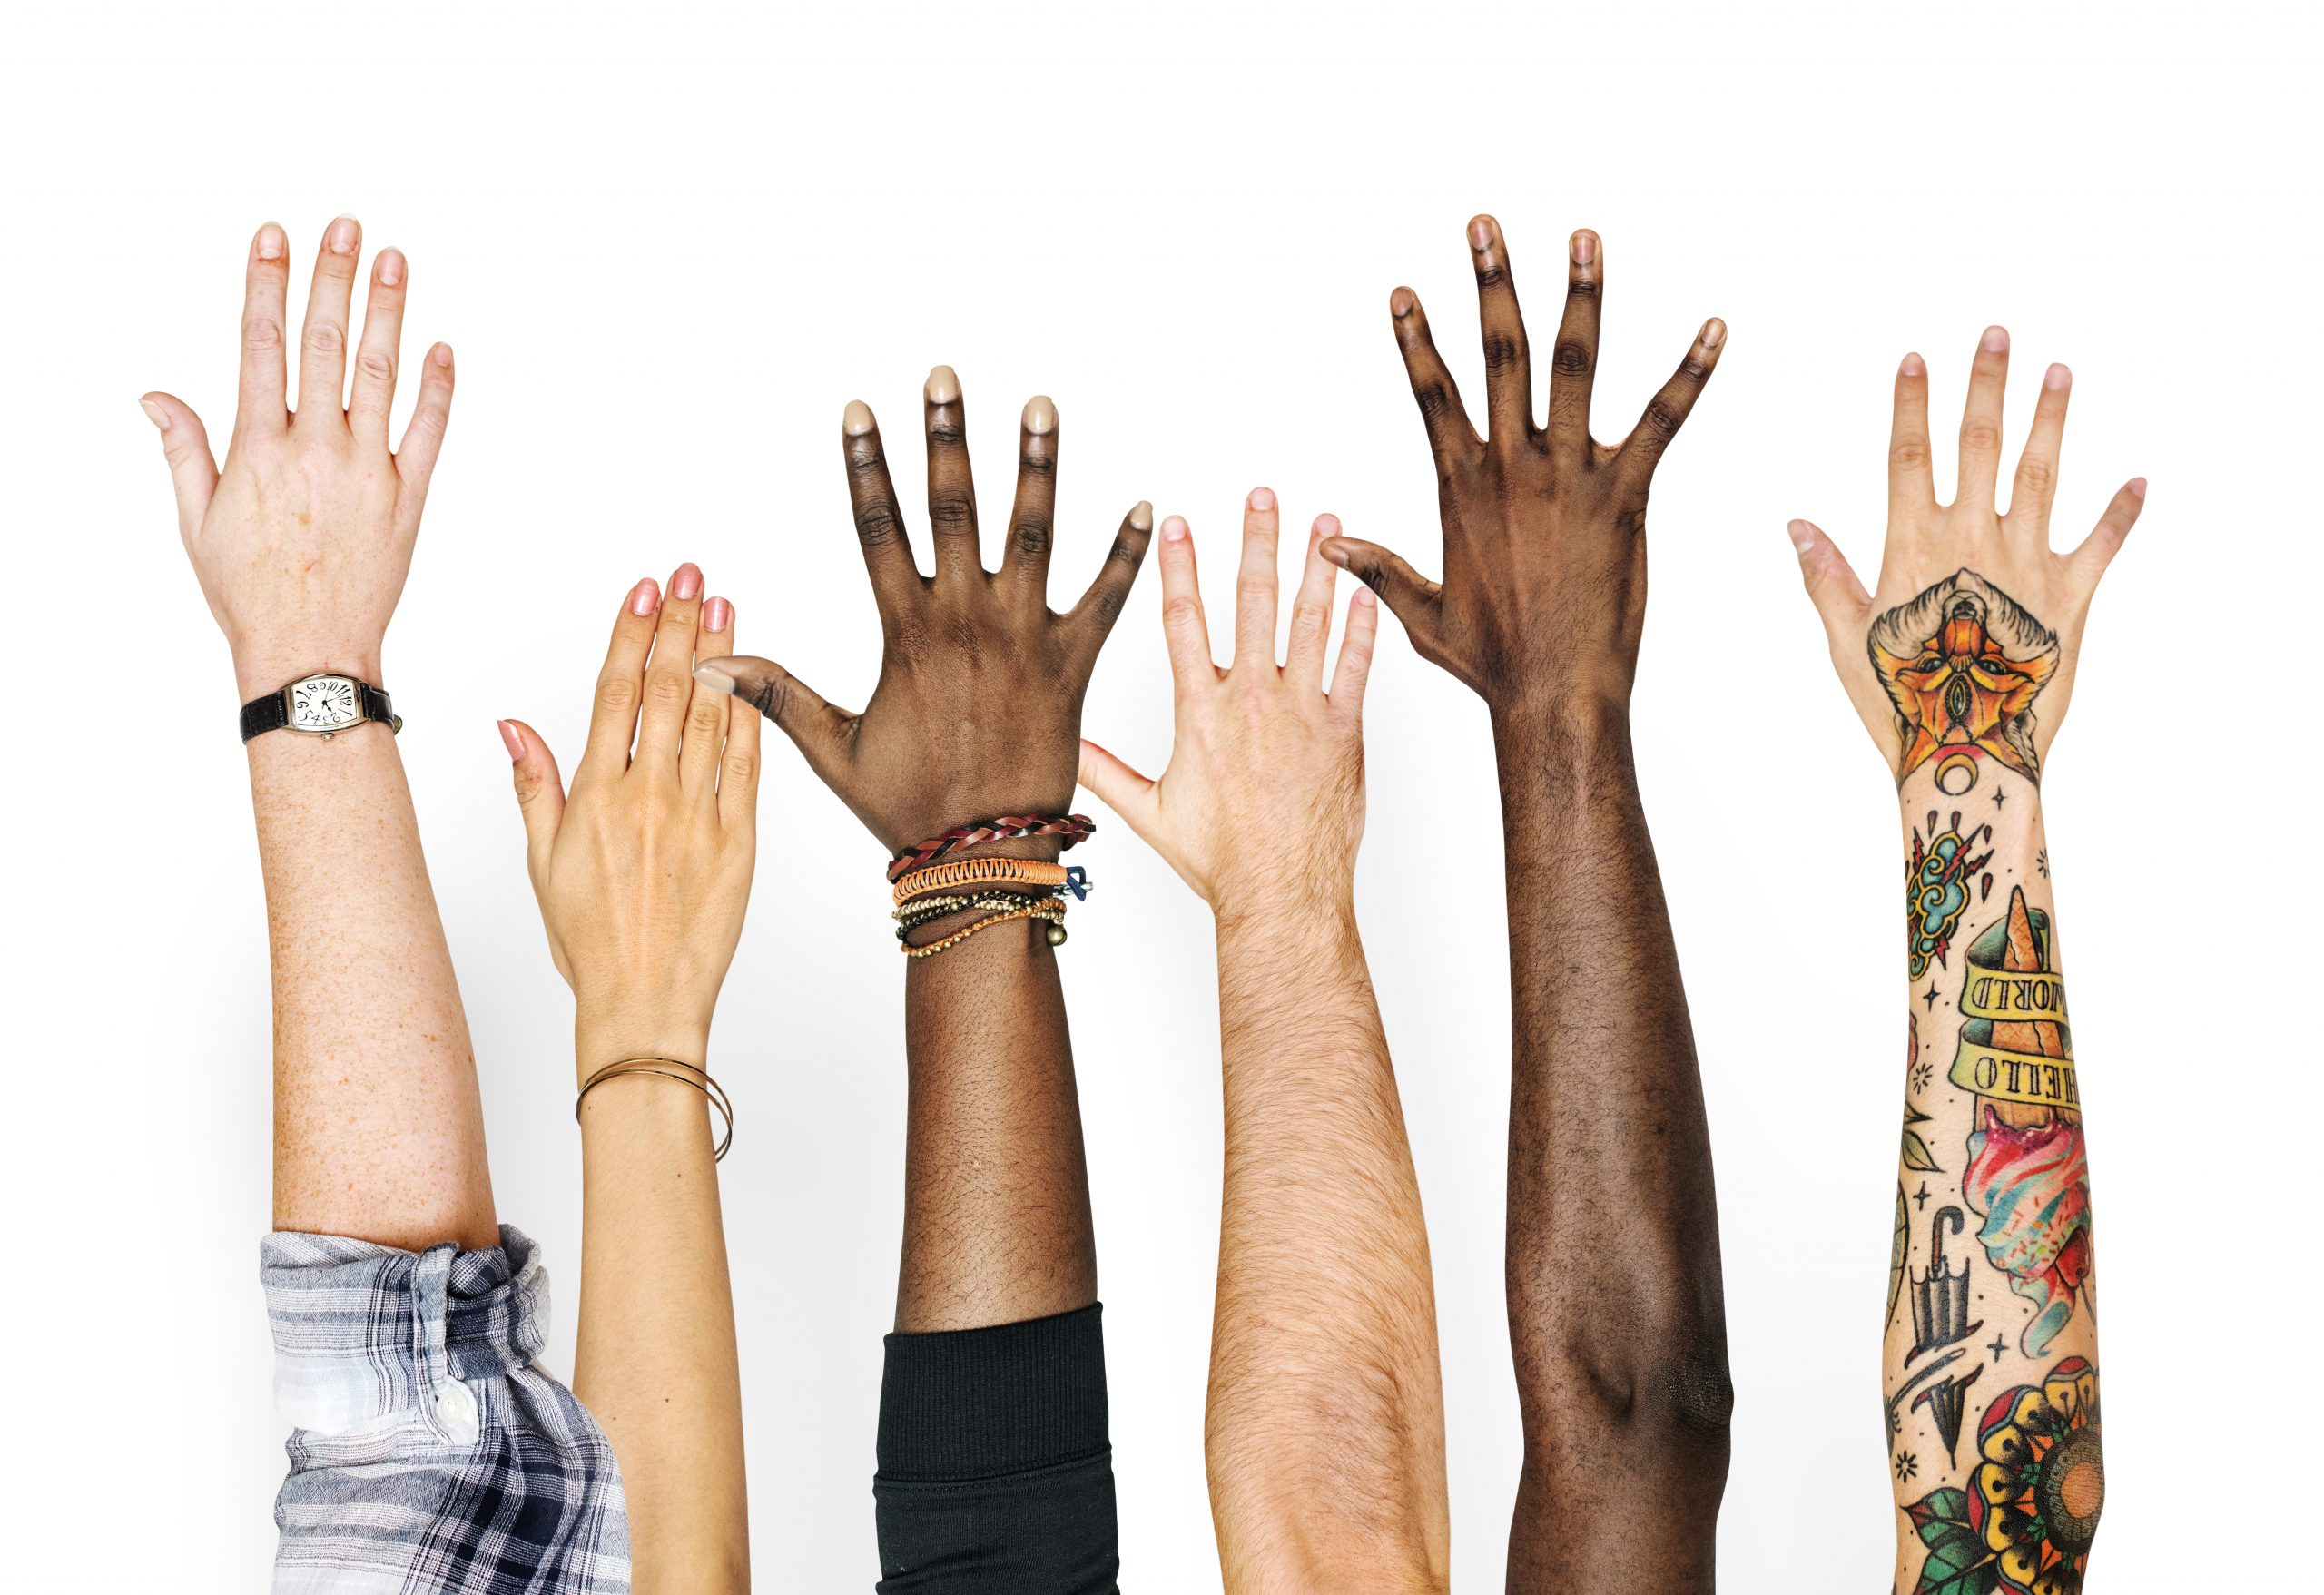 Cultures topic. Этническое разнообразие. Поднятая рука. Мультикультурализм. Многообразие руки.